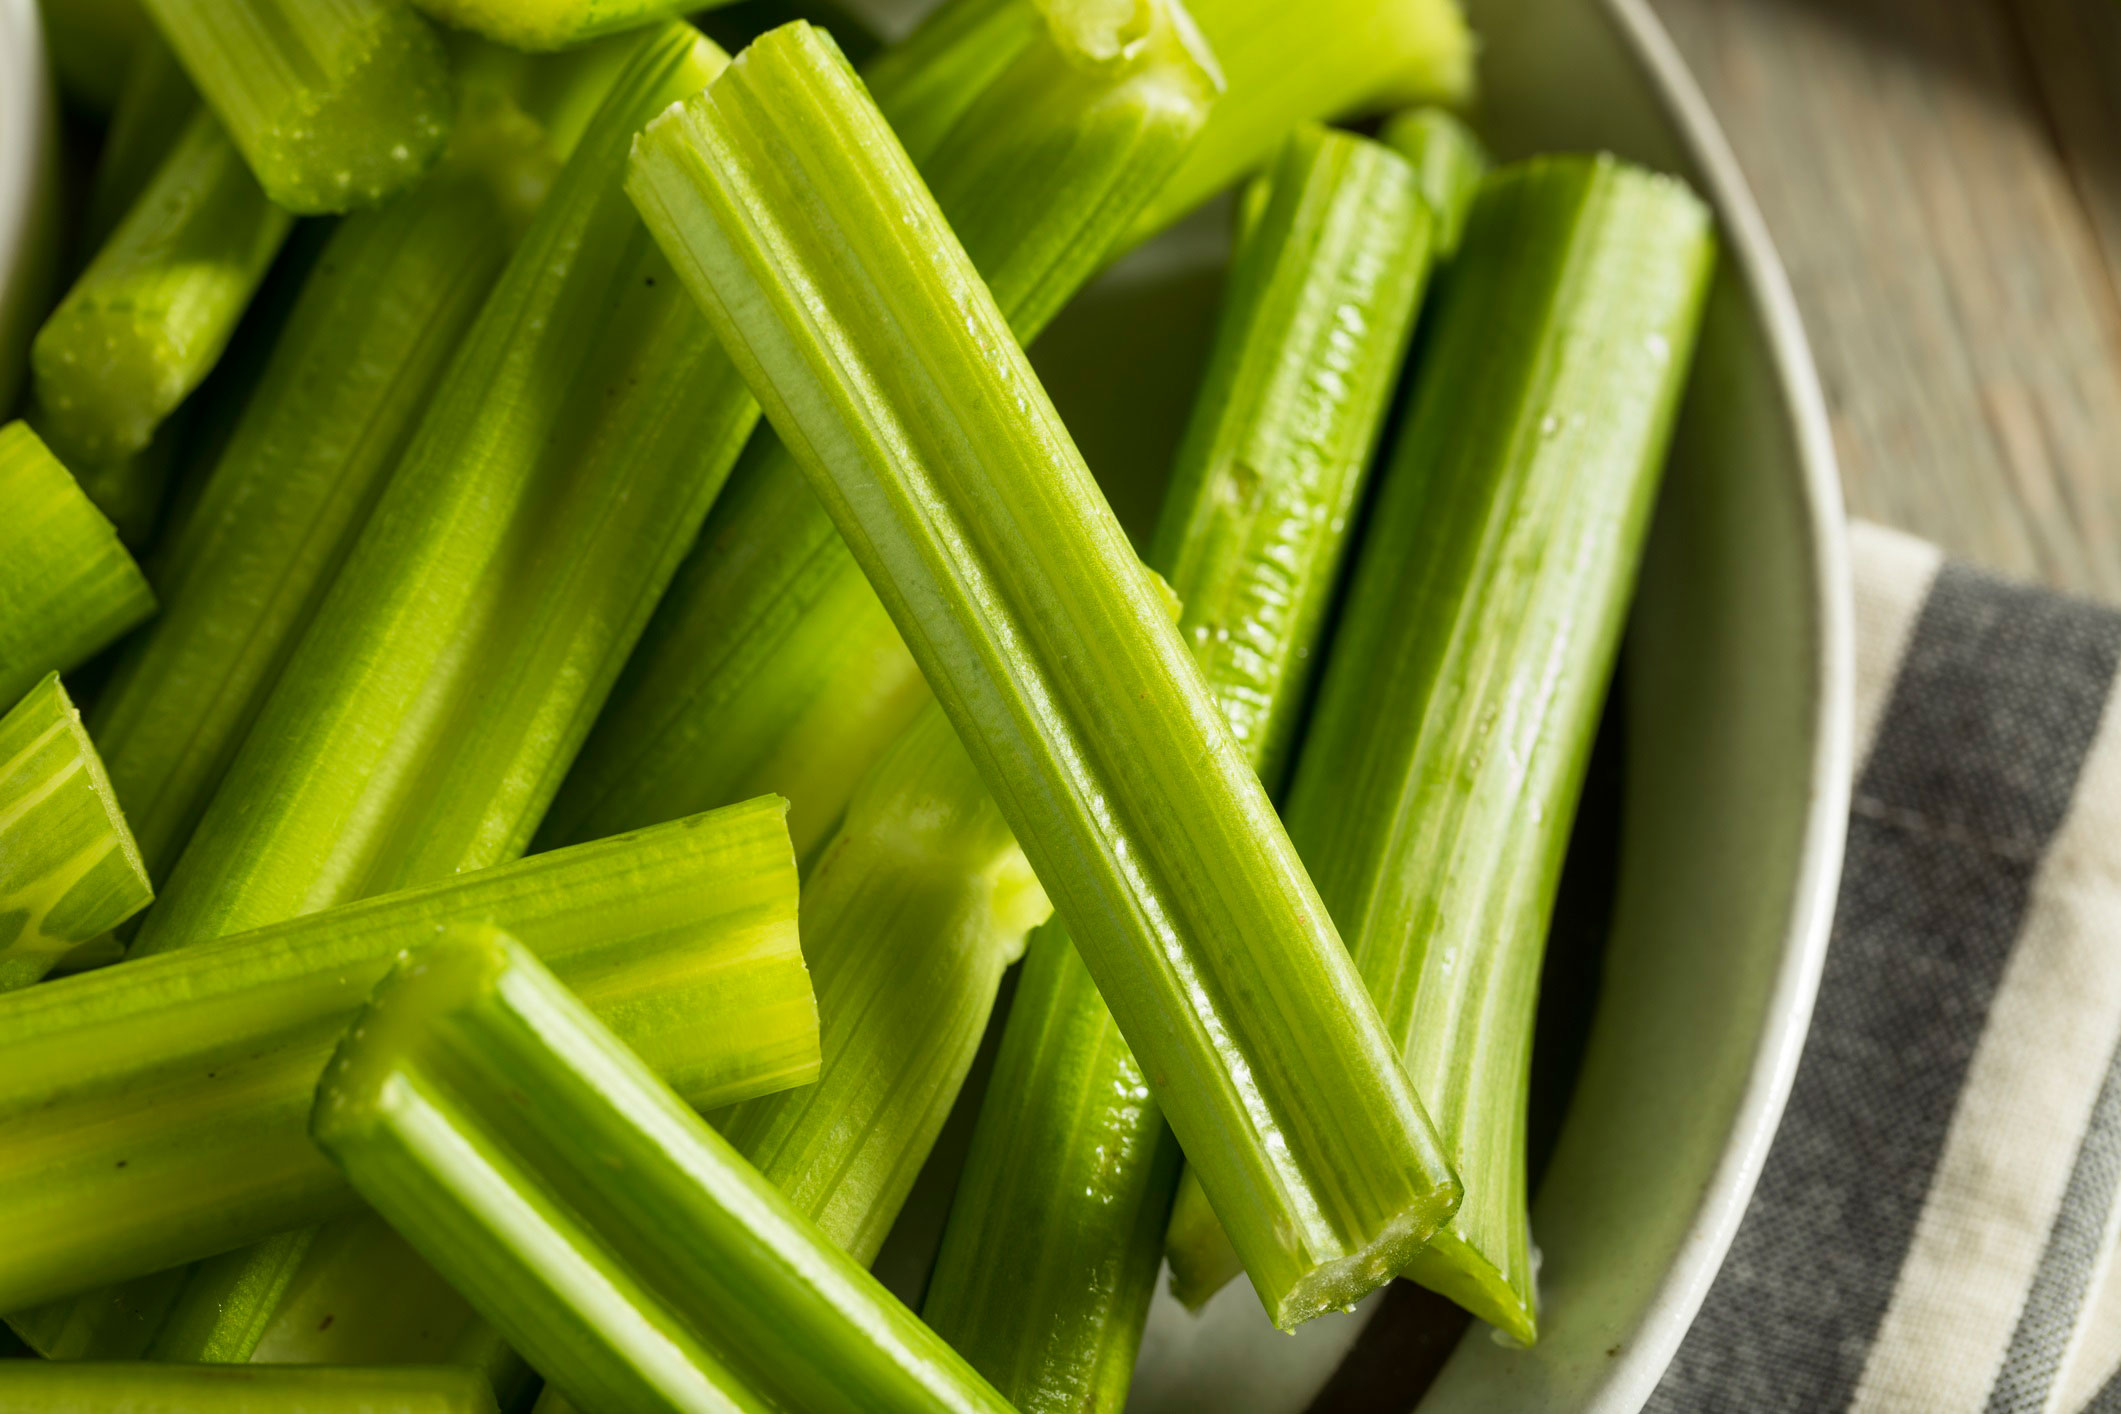 Close up of bowl of celery sticks.